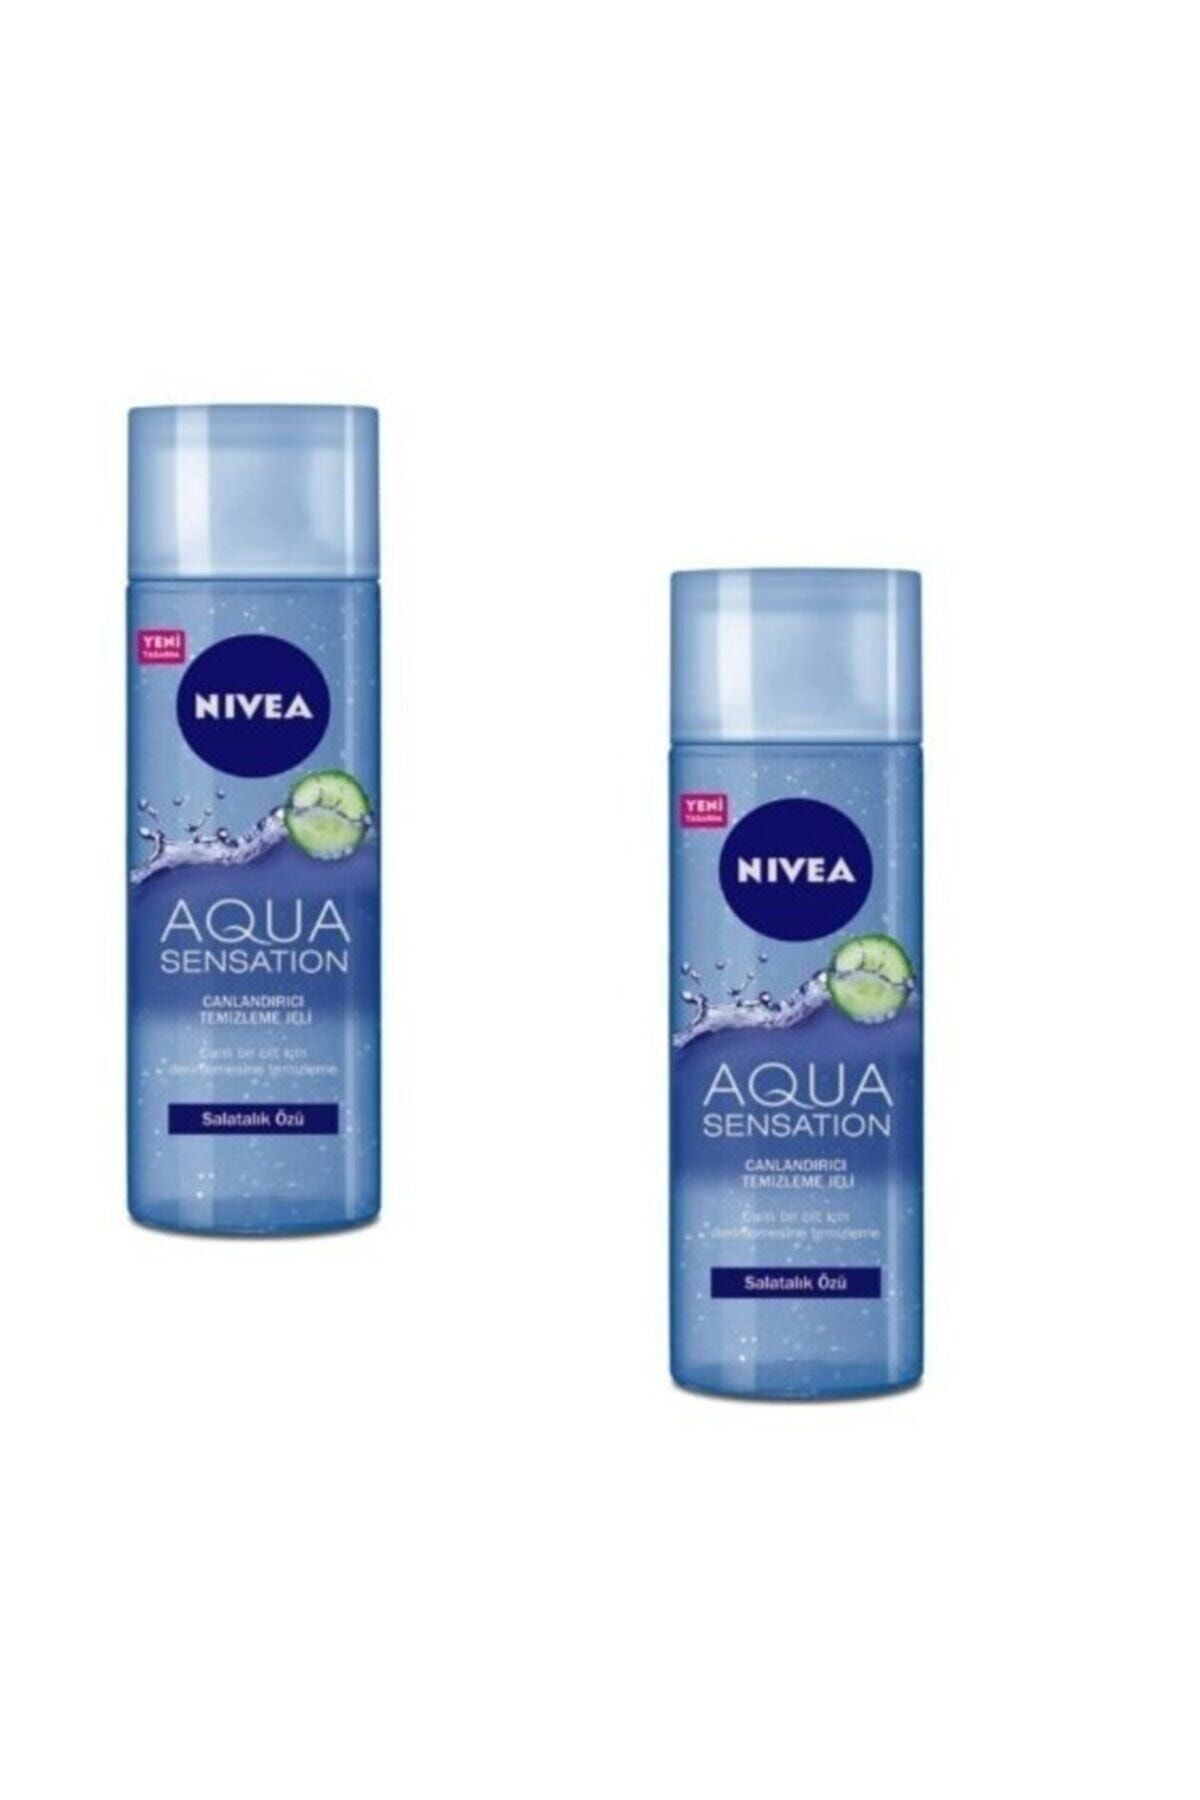 NIVEA Aqua Sensation Salatalık Özlü Canlandırıcı Temizleme Jeli 200 ml X 2 Adet